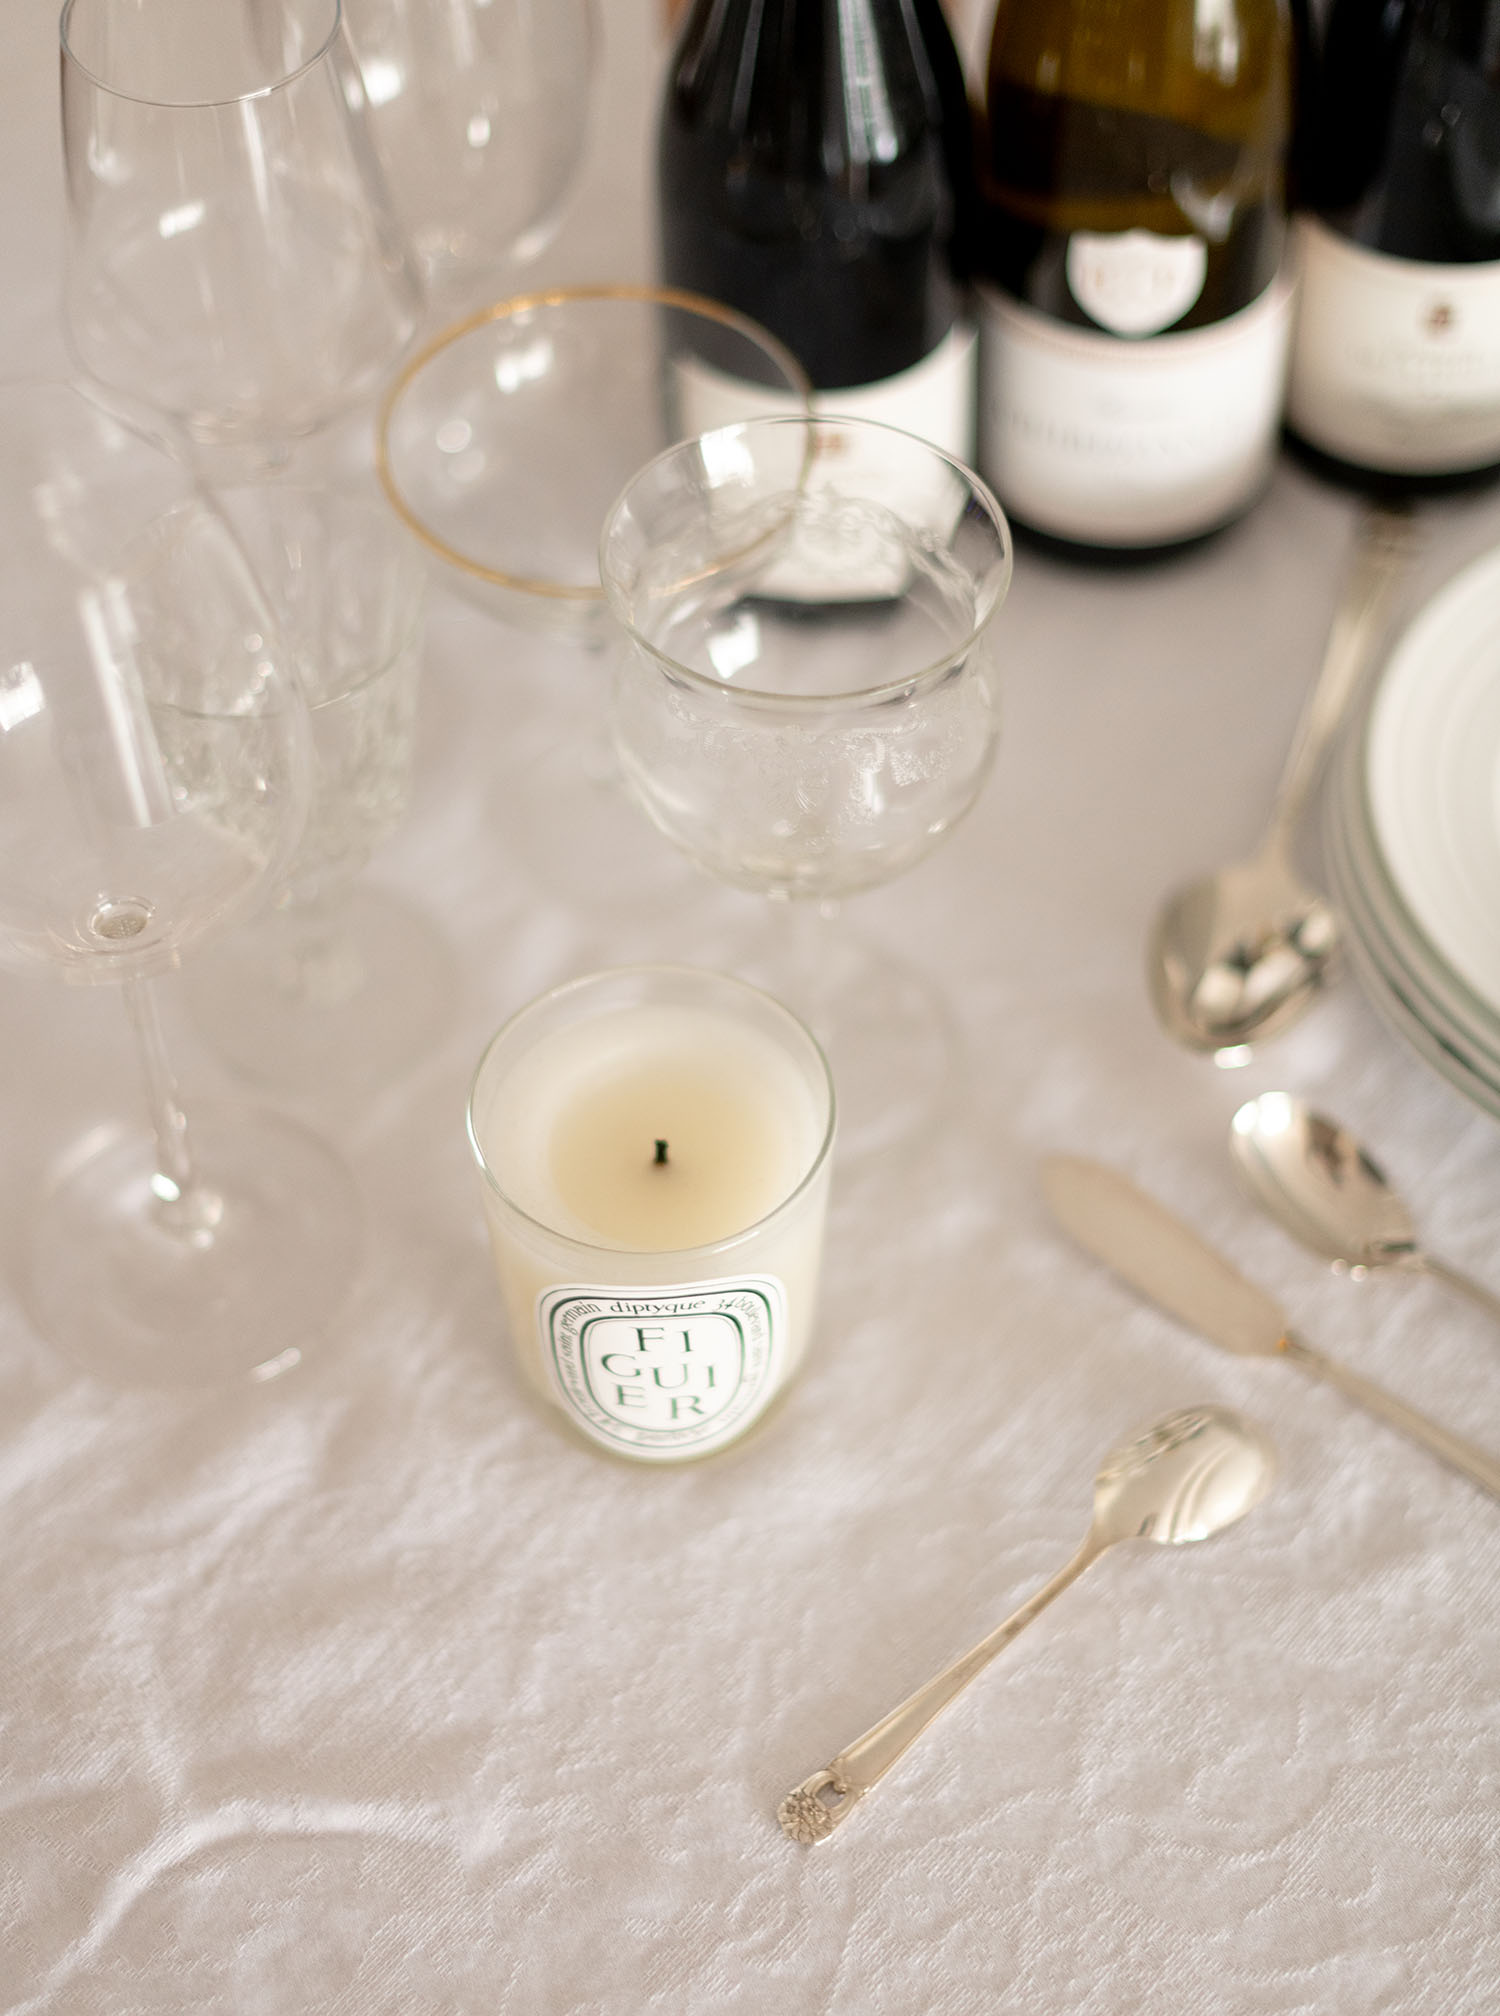 Coco & Voltaire - Diptyque Figuier candle, Vintage crystal glassware